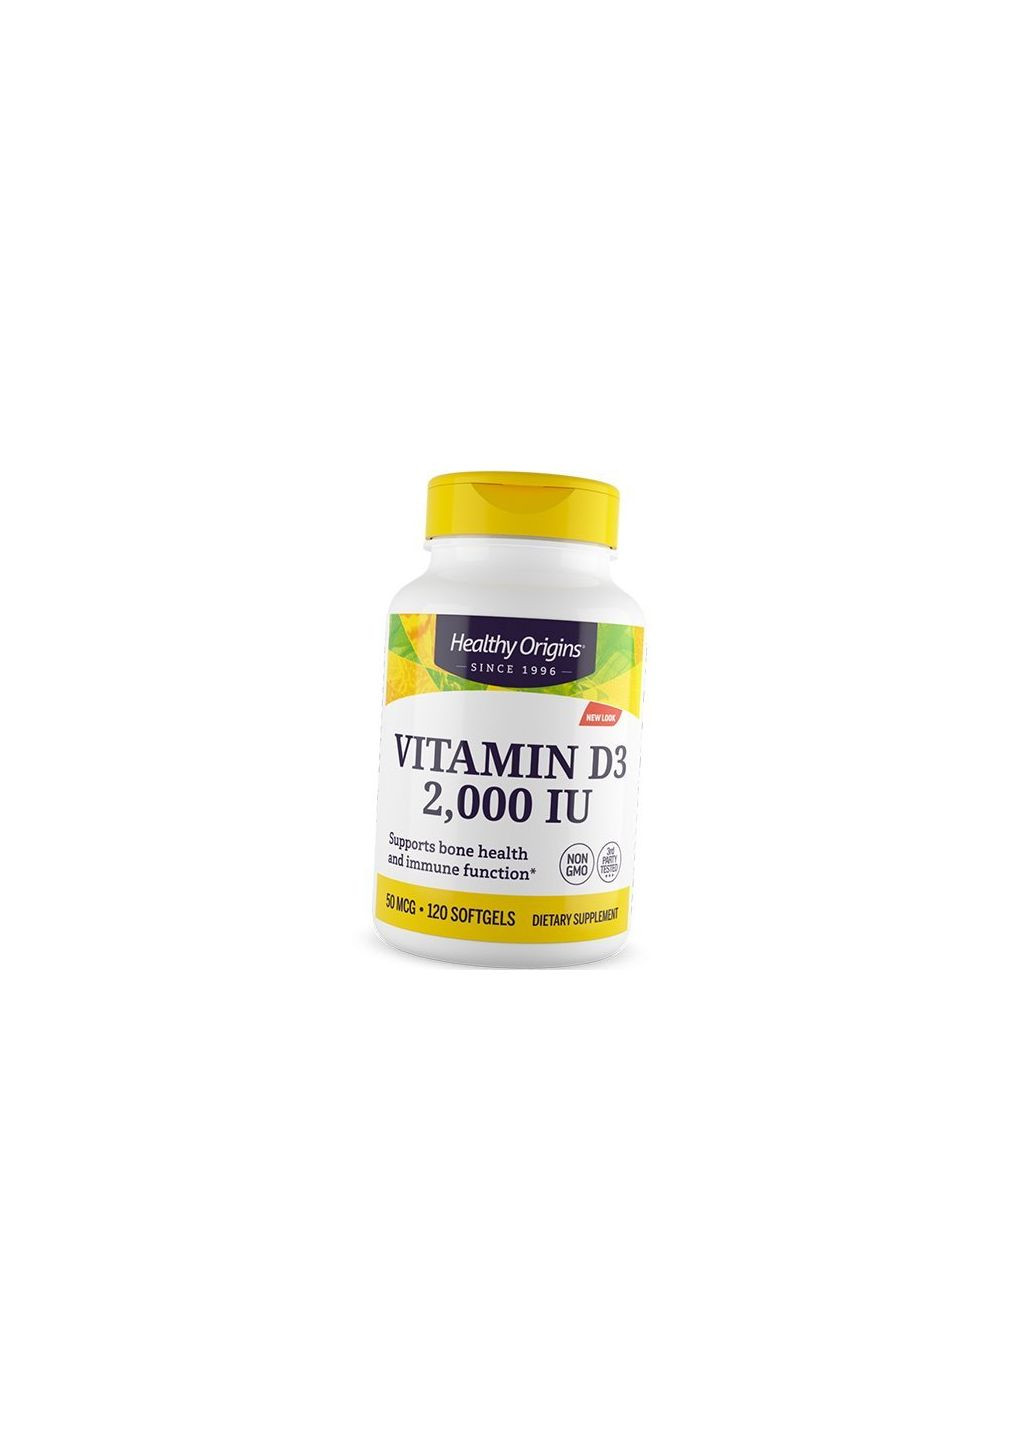 Вітамін Д3 високоактивний, Vitamin D3 2000, 360гелкапс 36354036, (36354036) Healthy Origins (293255819)